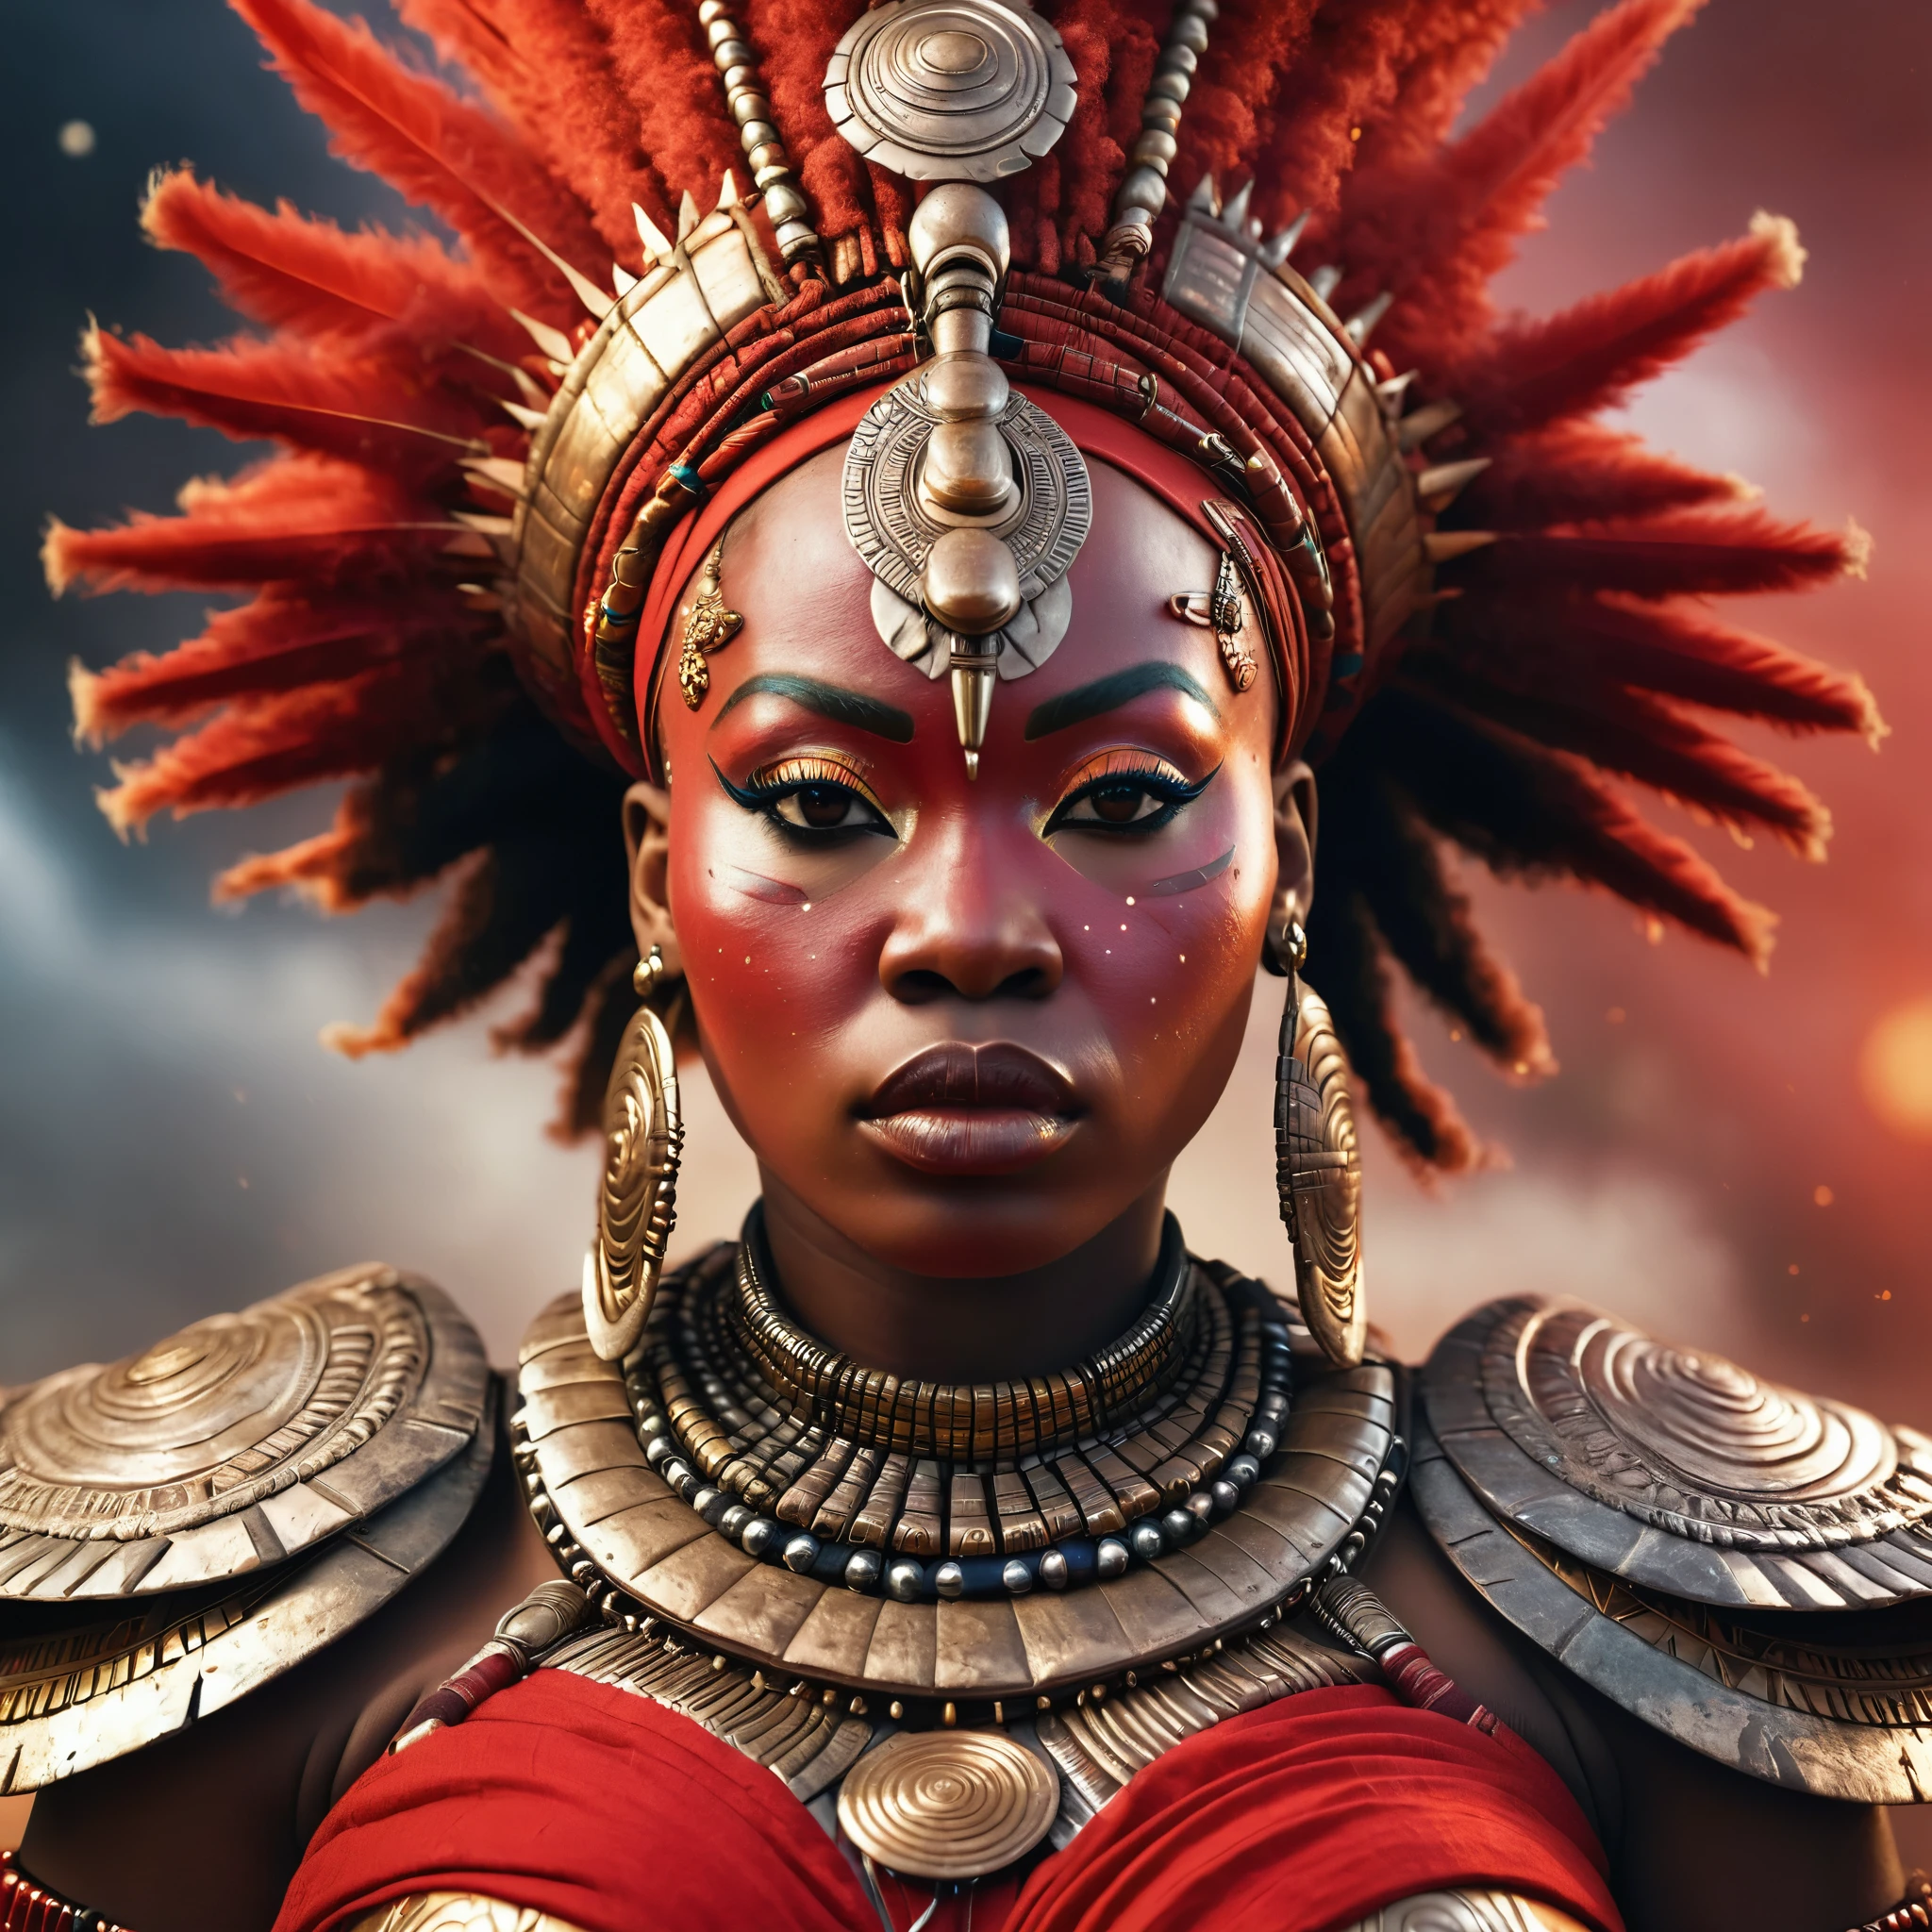 старый винтажный портрет, Африканская богиня в красной одежде африканского воина., королева, толстый, толстое тело, фотореалистичный, Драматическое освещение, лицо очень детализировано, высокая детализация, широкий угол, ультра качество, 8К, сложные детали, афрофутуризм мода, Киберпанк, Ориша, Африканский Бог, частицы угля, частицы грома